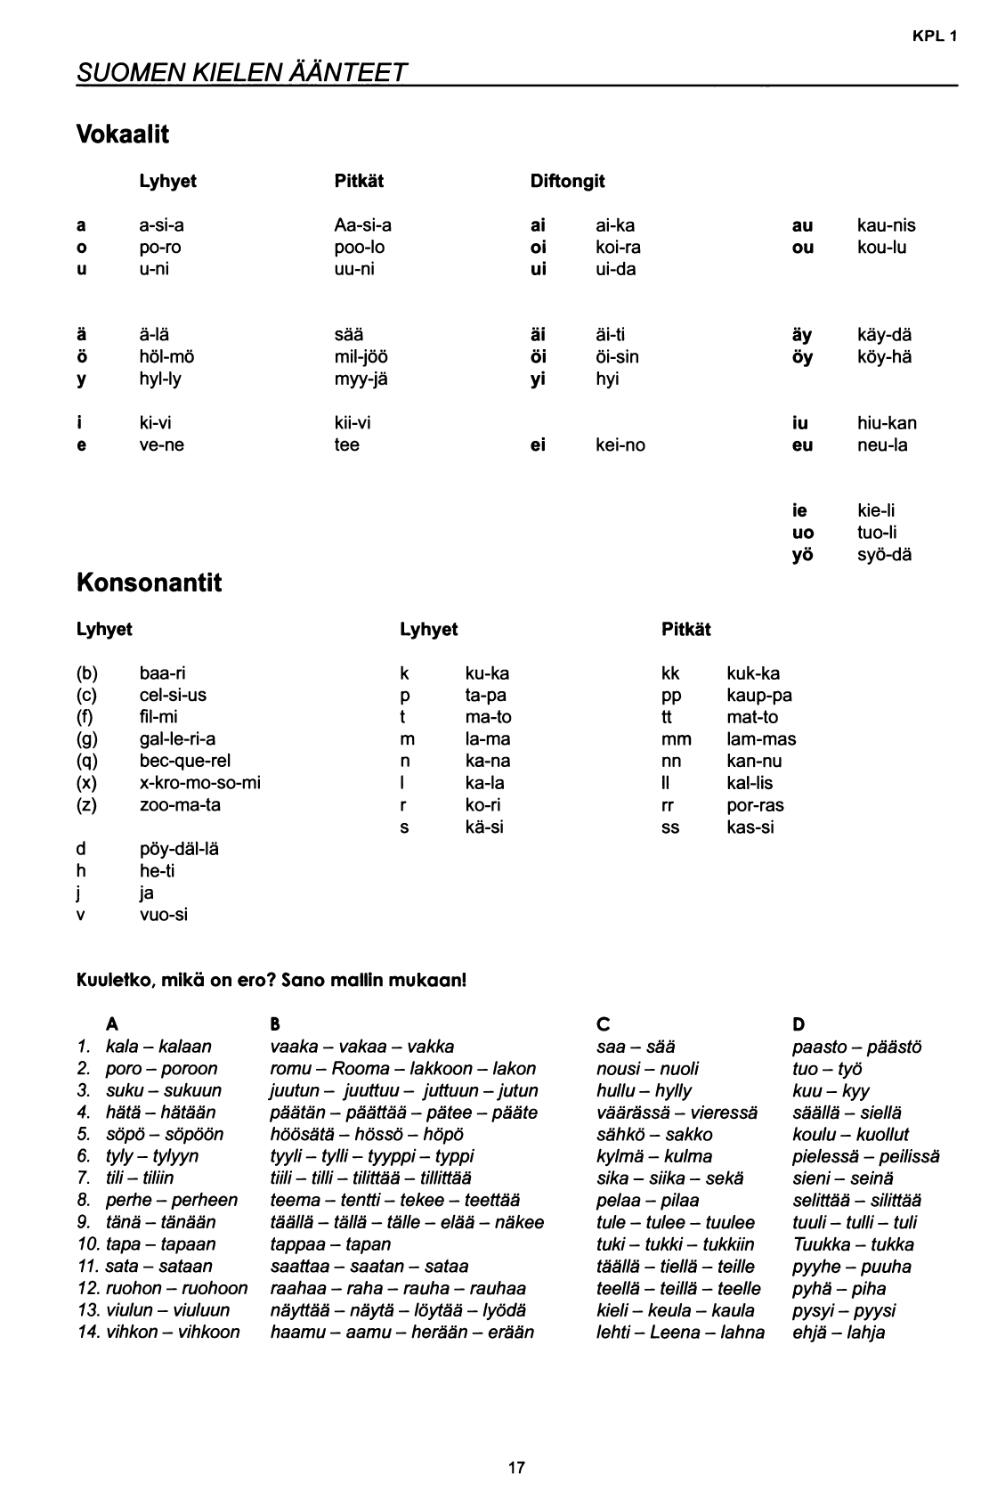 Suomen kielen äänteet